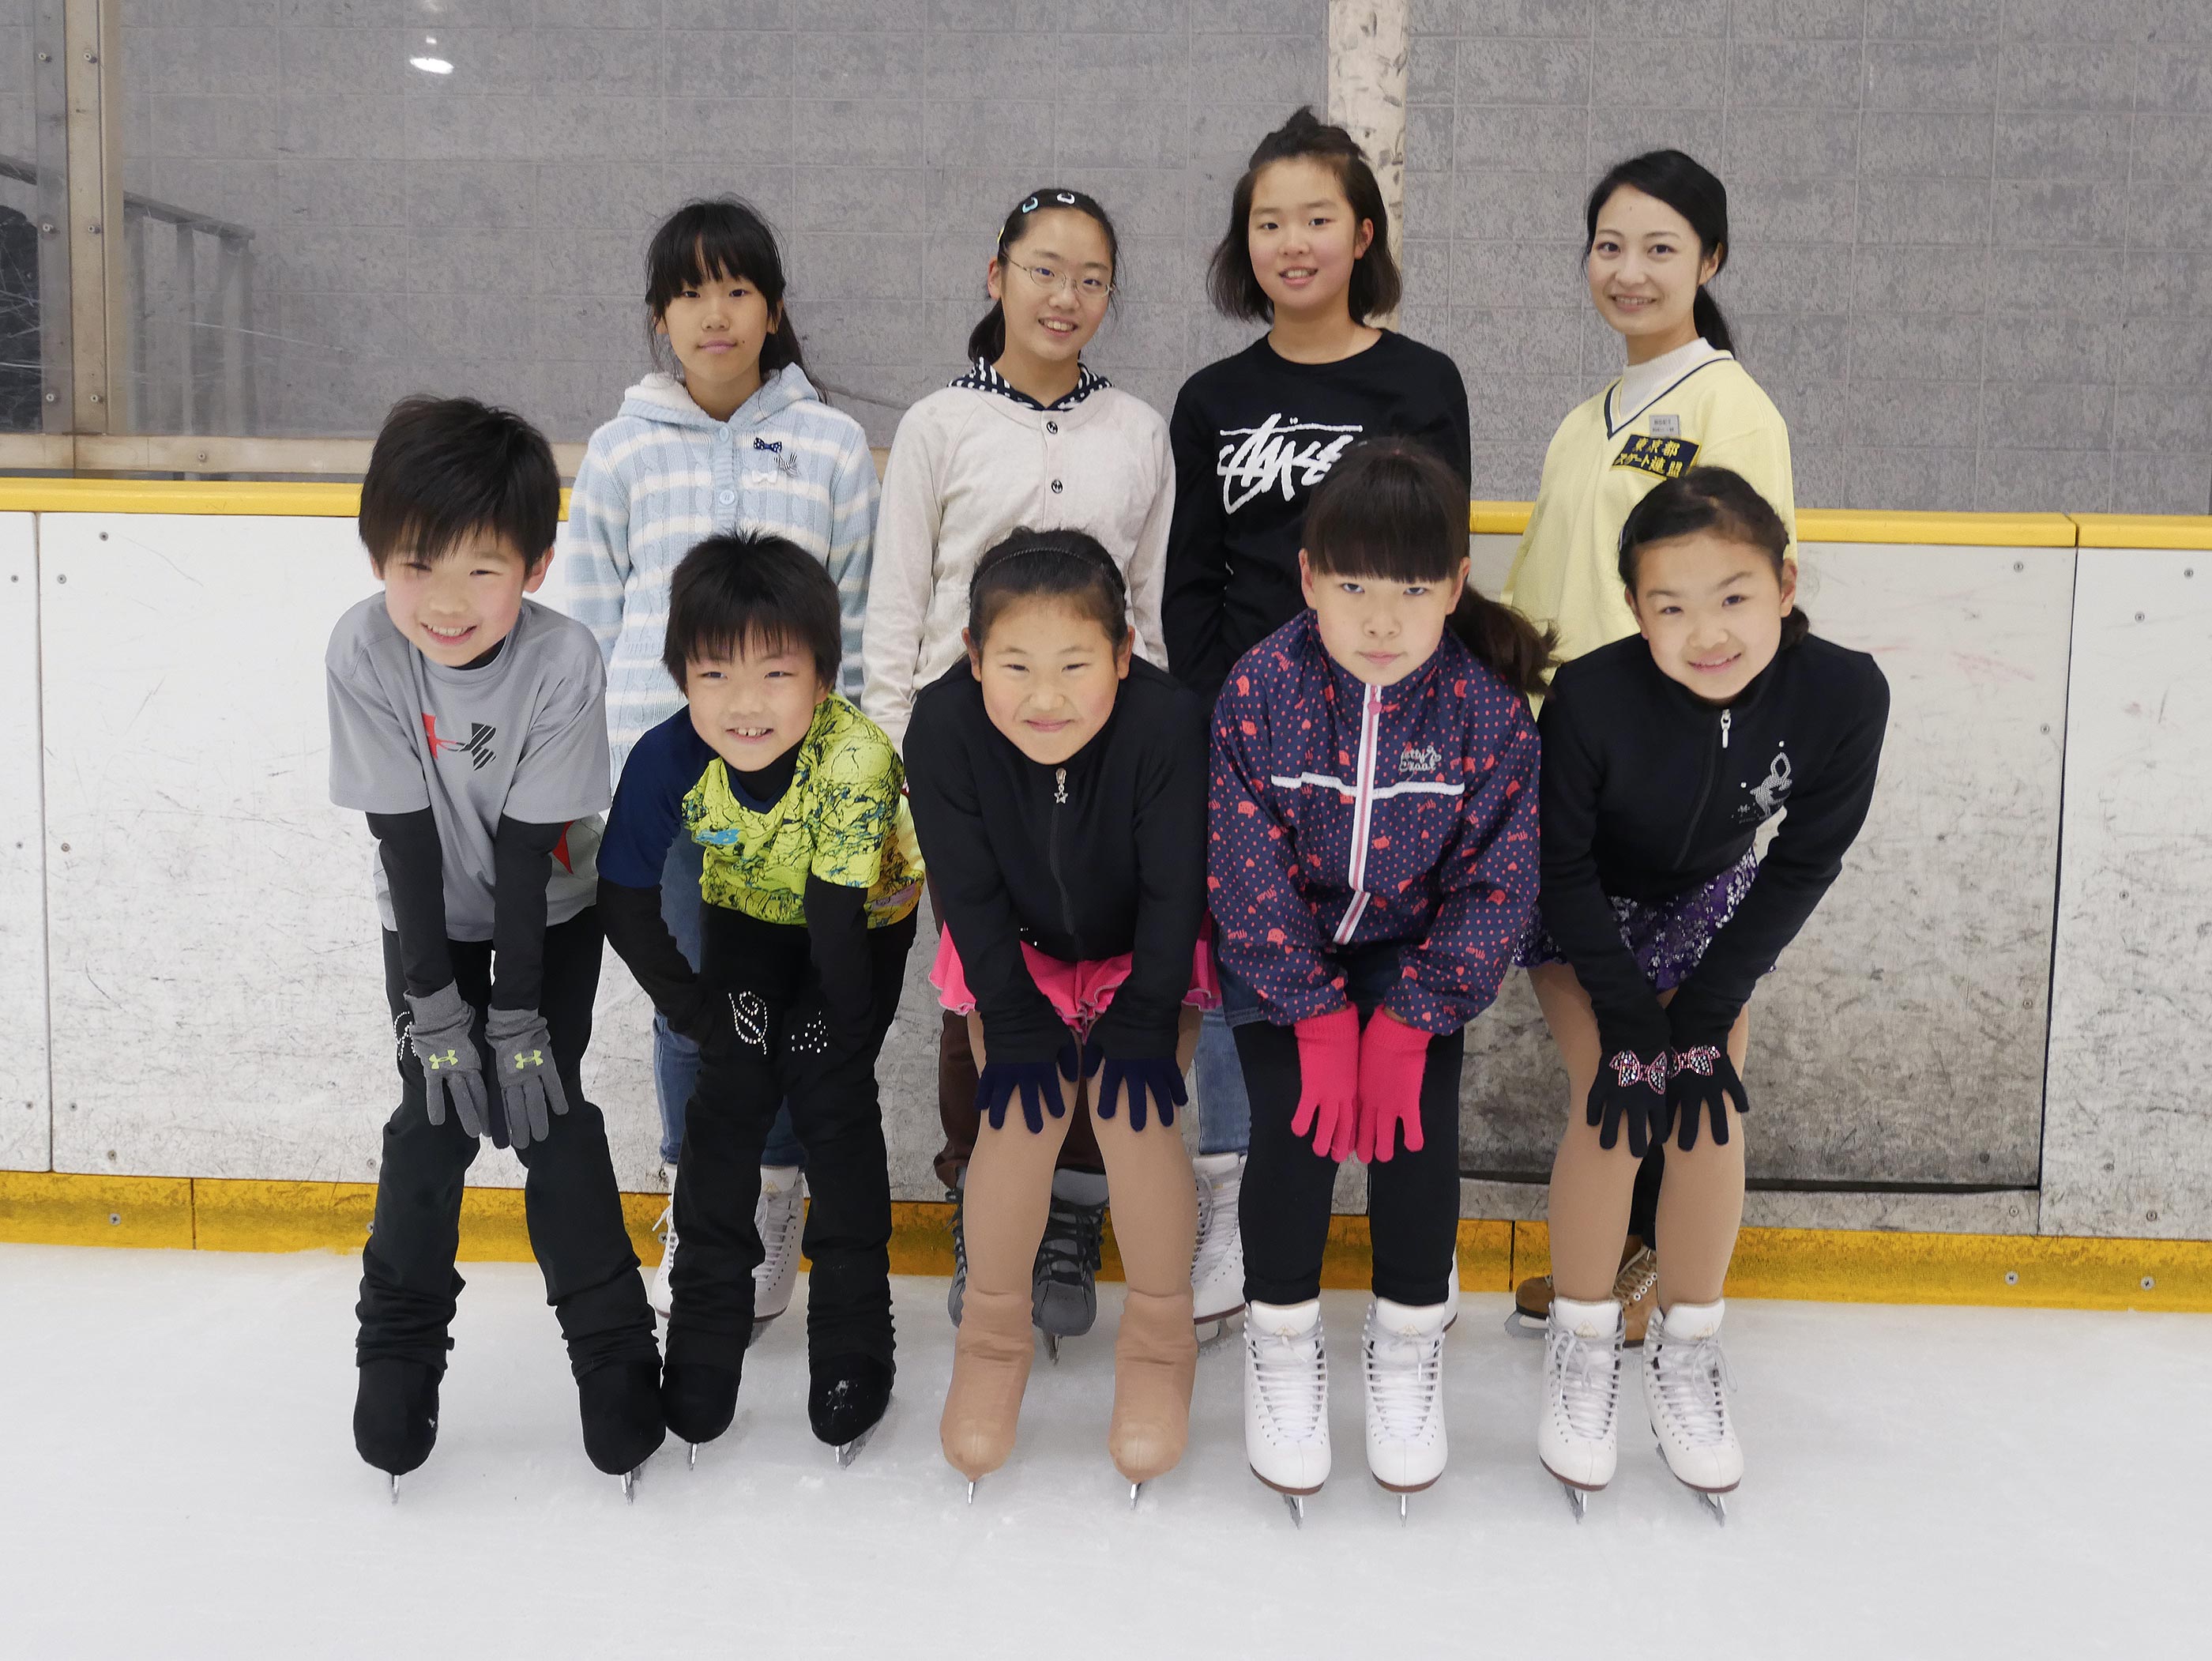 日本 スケート 連盟